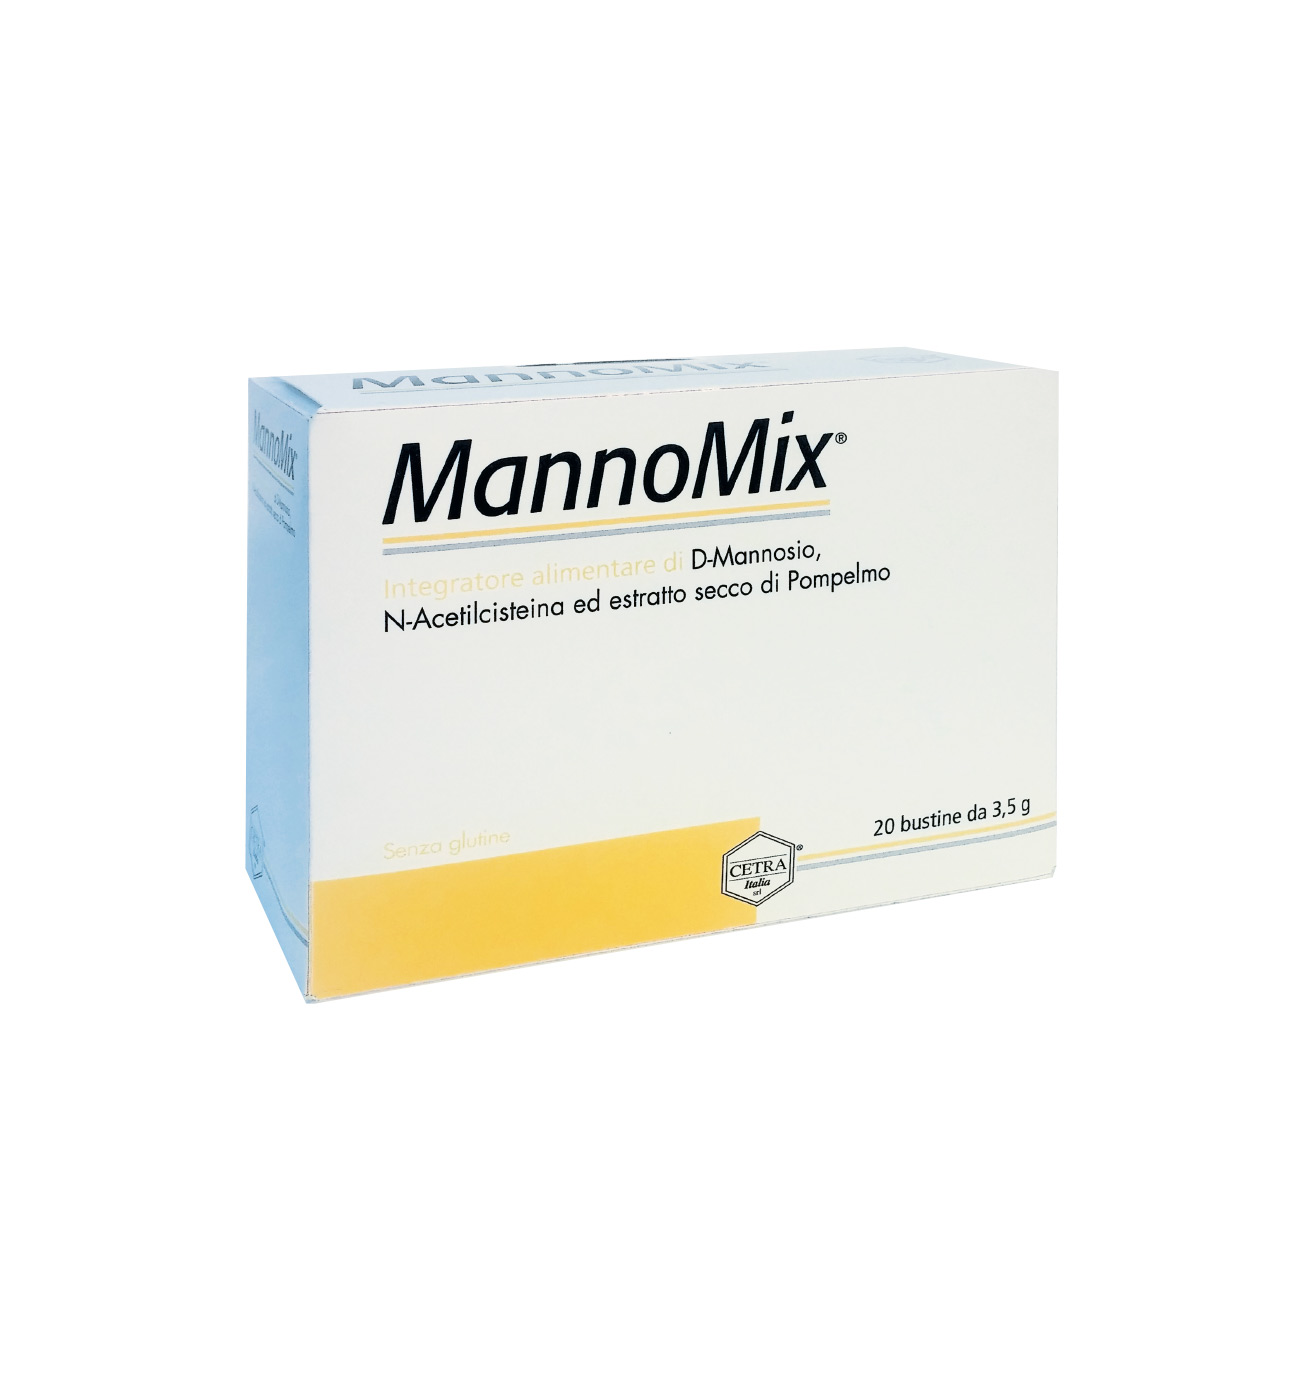 mannomix-prodotto